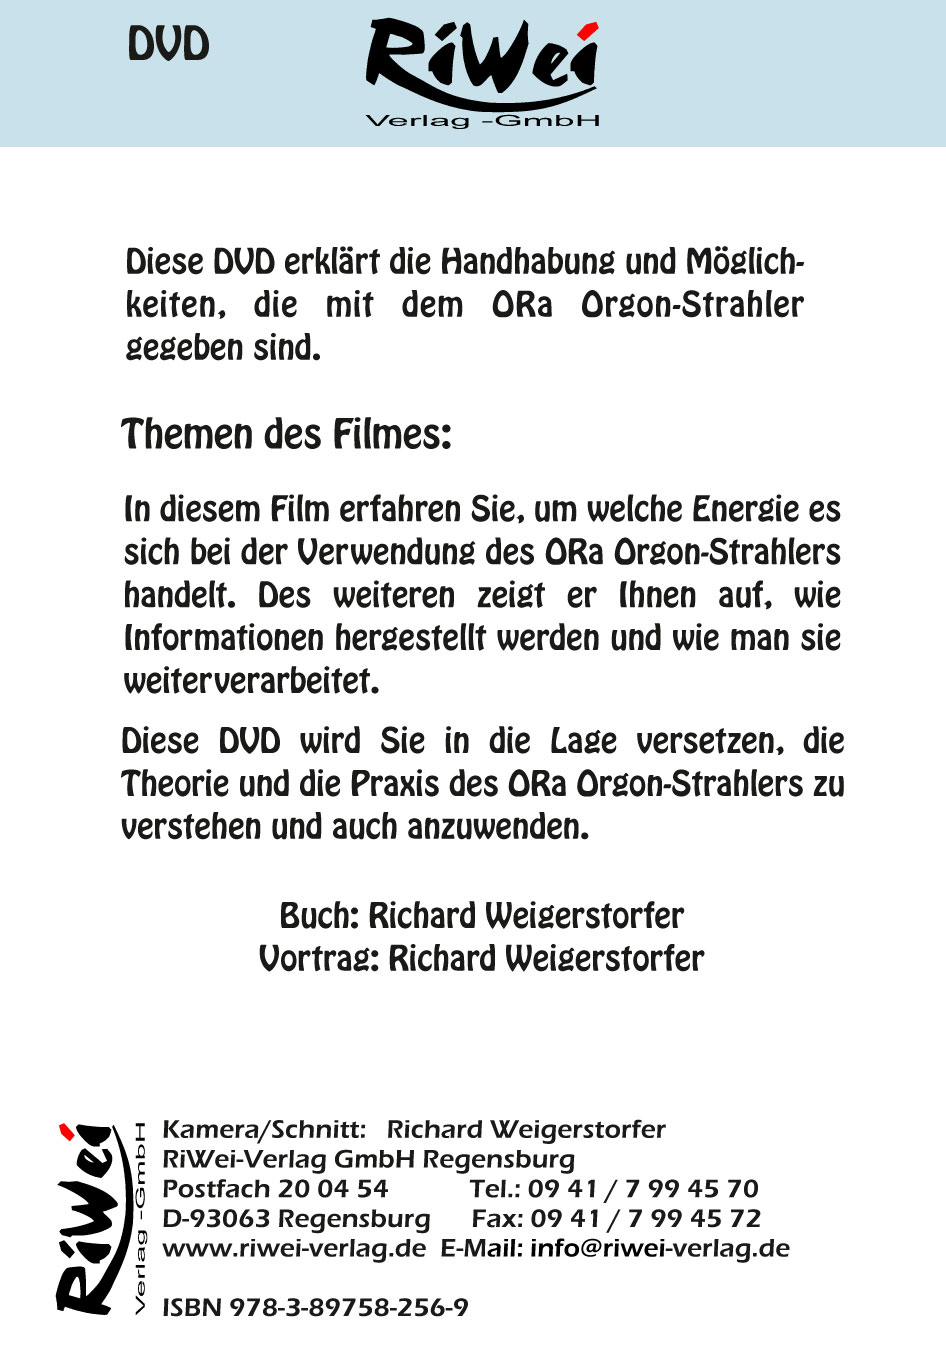 Richard Weigerstorfer - ORa Orgon-Strahler Bedienungsanleitung - Film Download